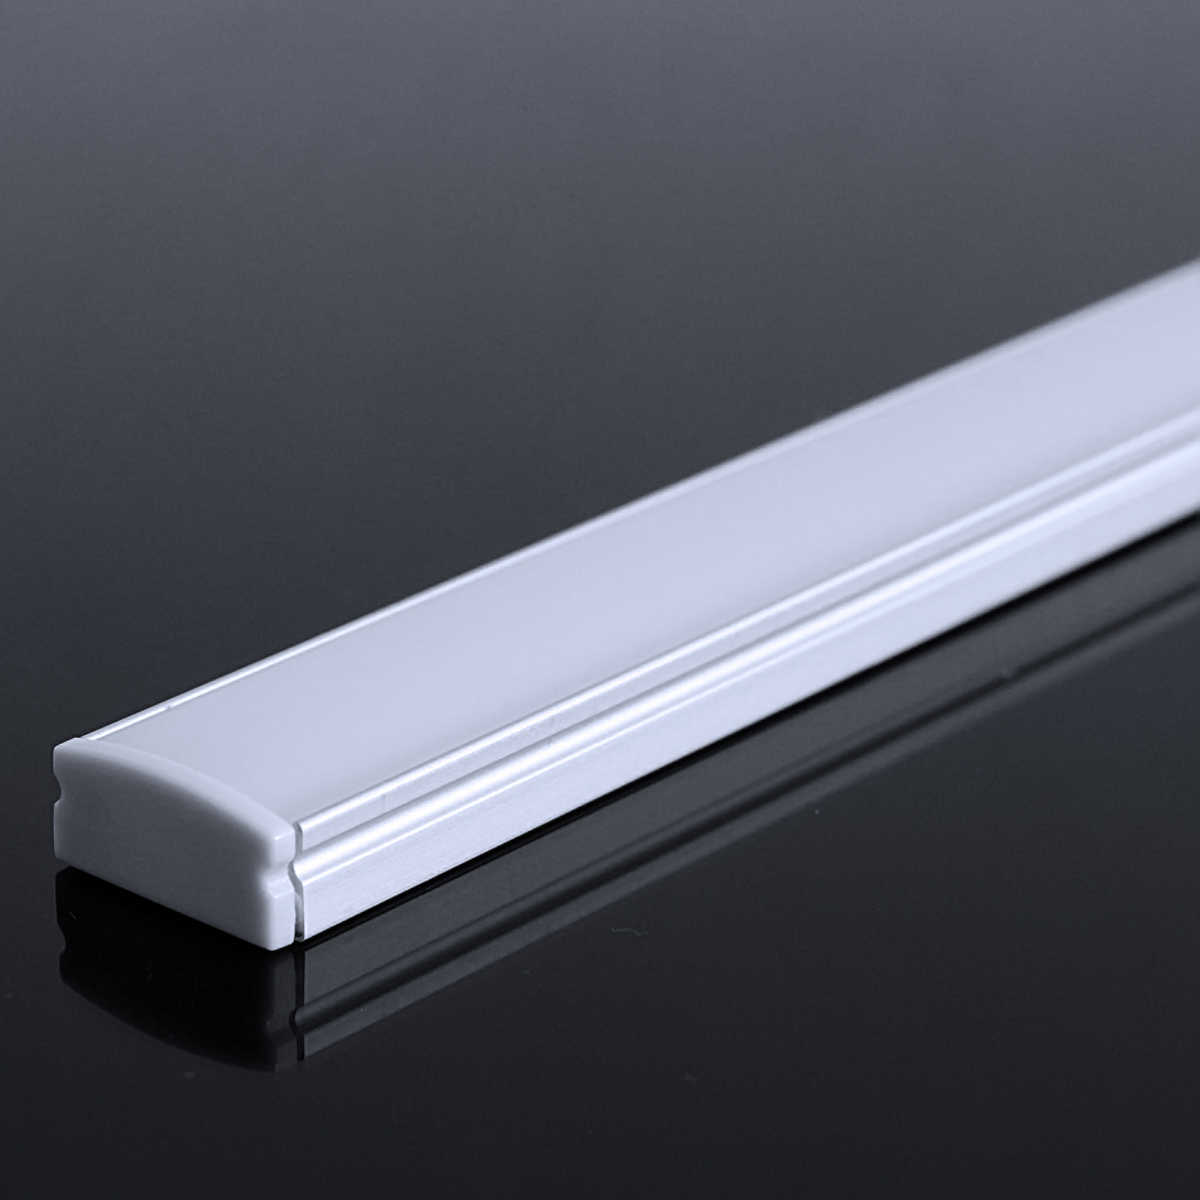 LED Flachprofil "Slim-Line" | Abdeckung diffus | Zuschnitt auf 94cm |